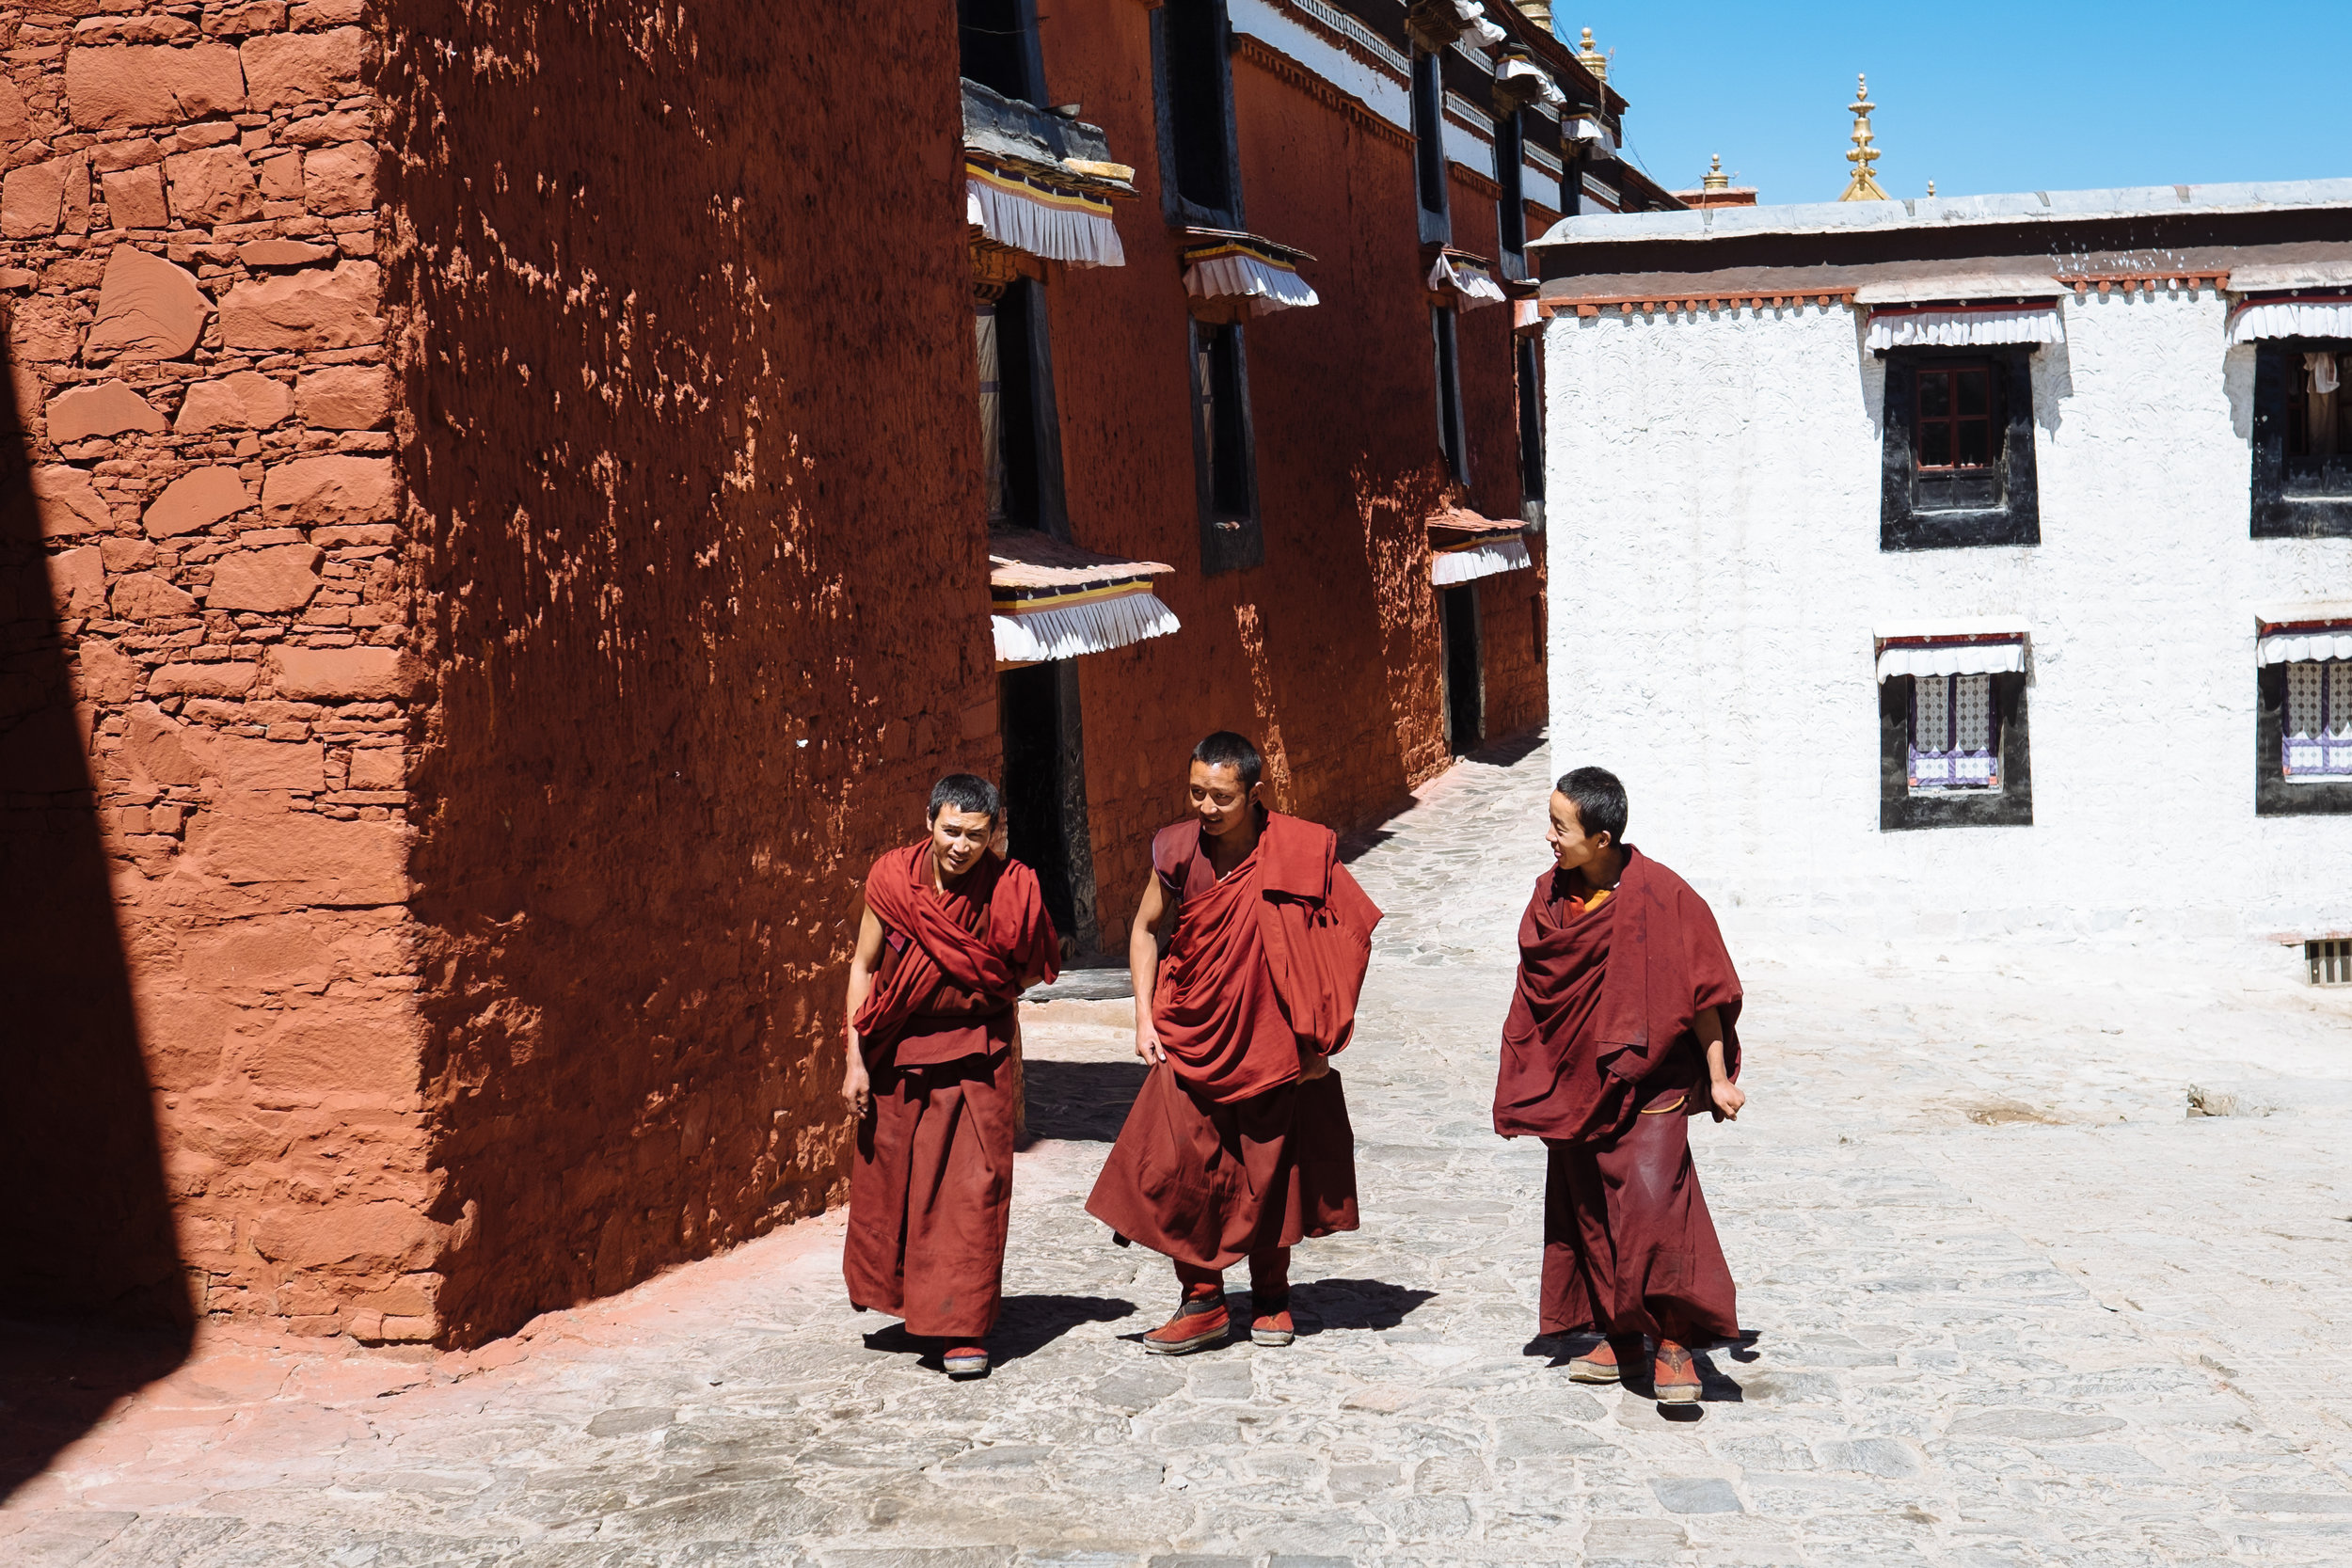 Tashilhunpo Monastery (I)